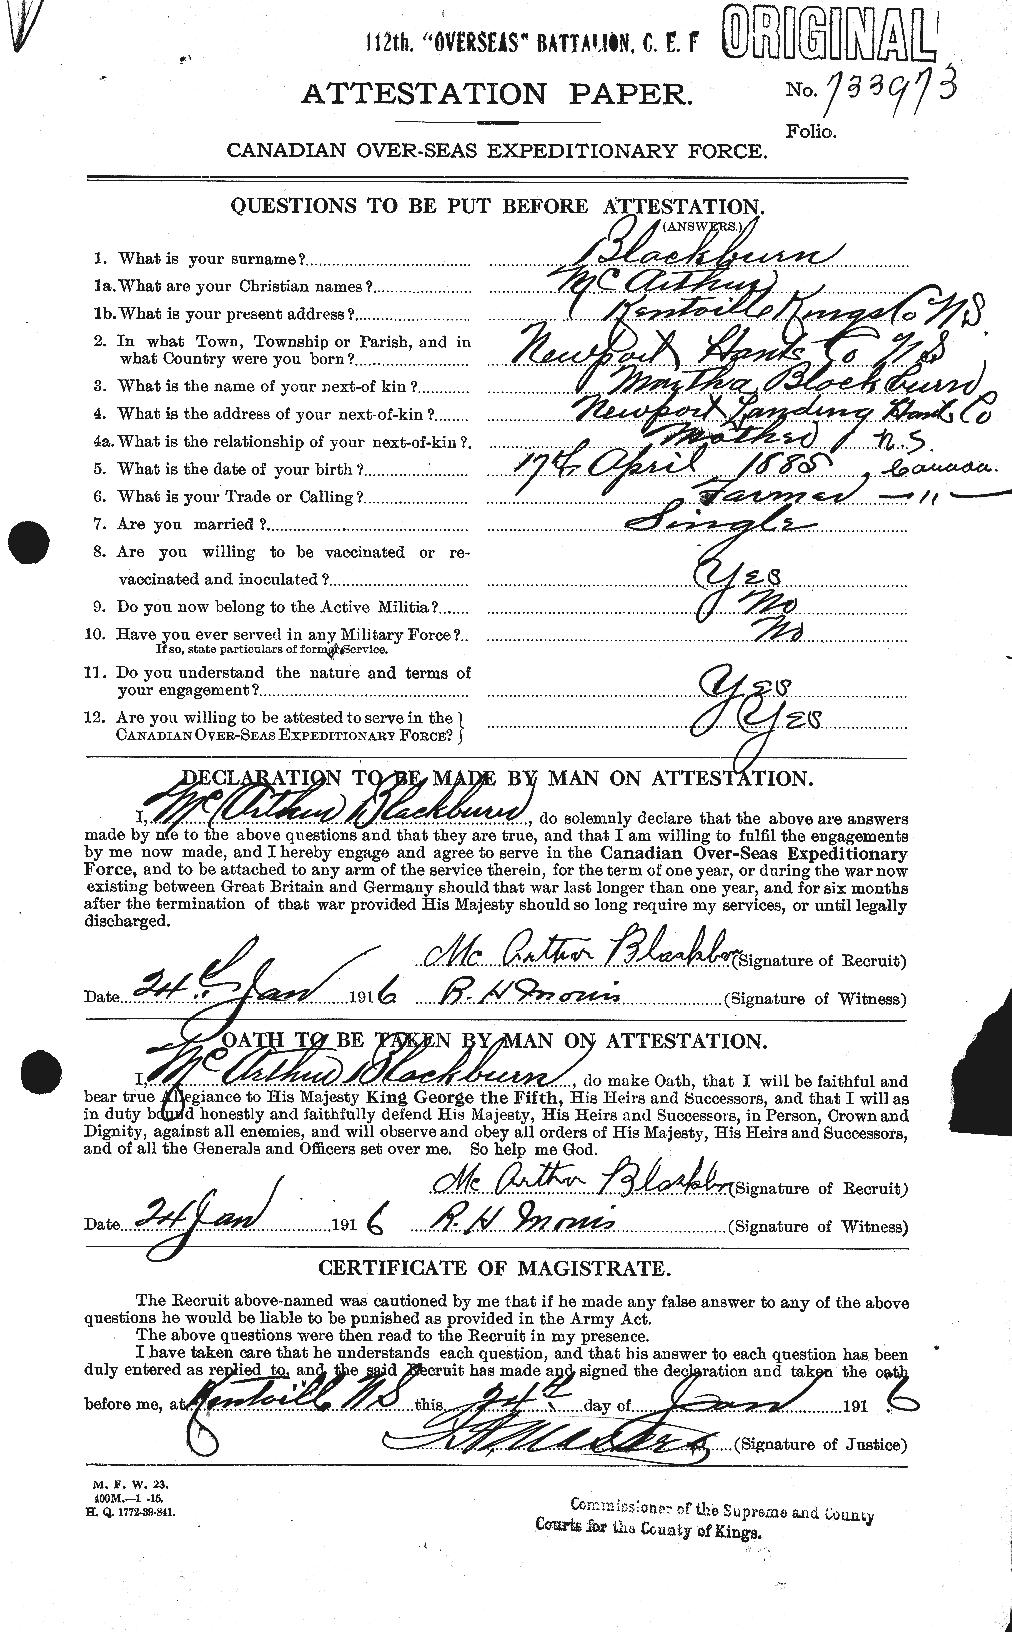 Dossiers du Personnel de la Première Guerre mondiale - CEC 246401a